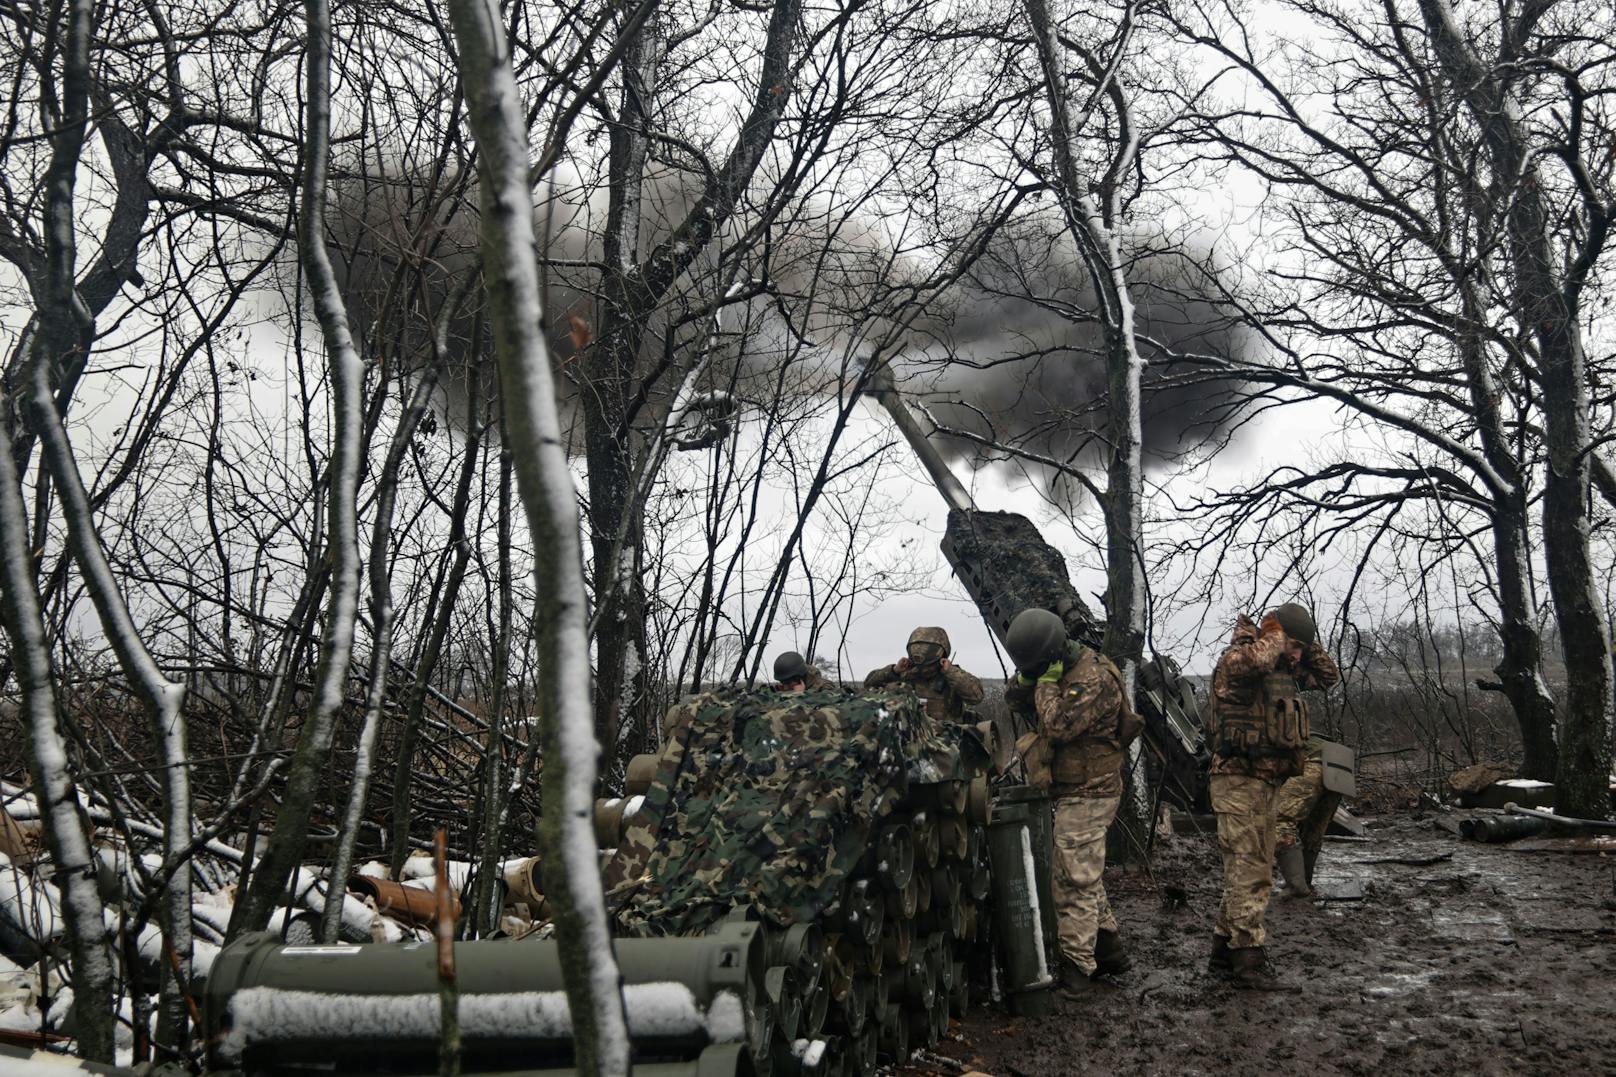 Bilder von der Schlacht um Bachmut im Osten der Ukraine, 2022.